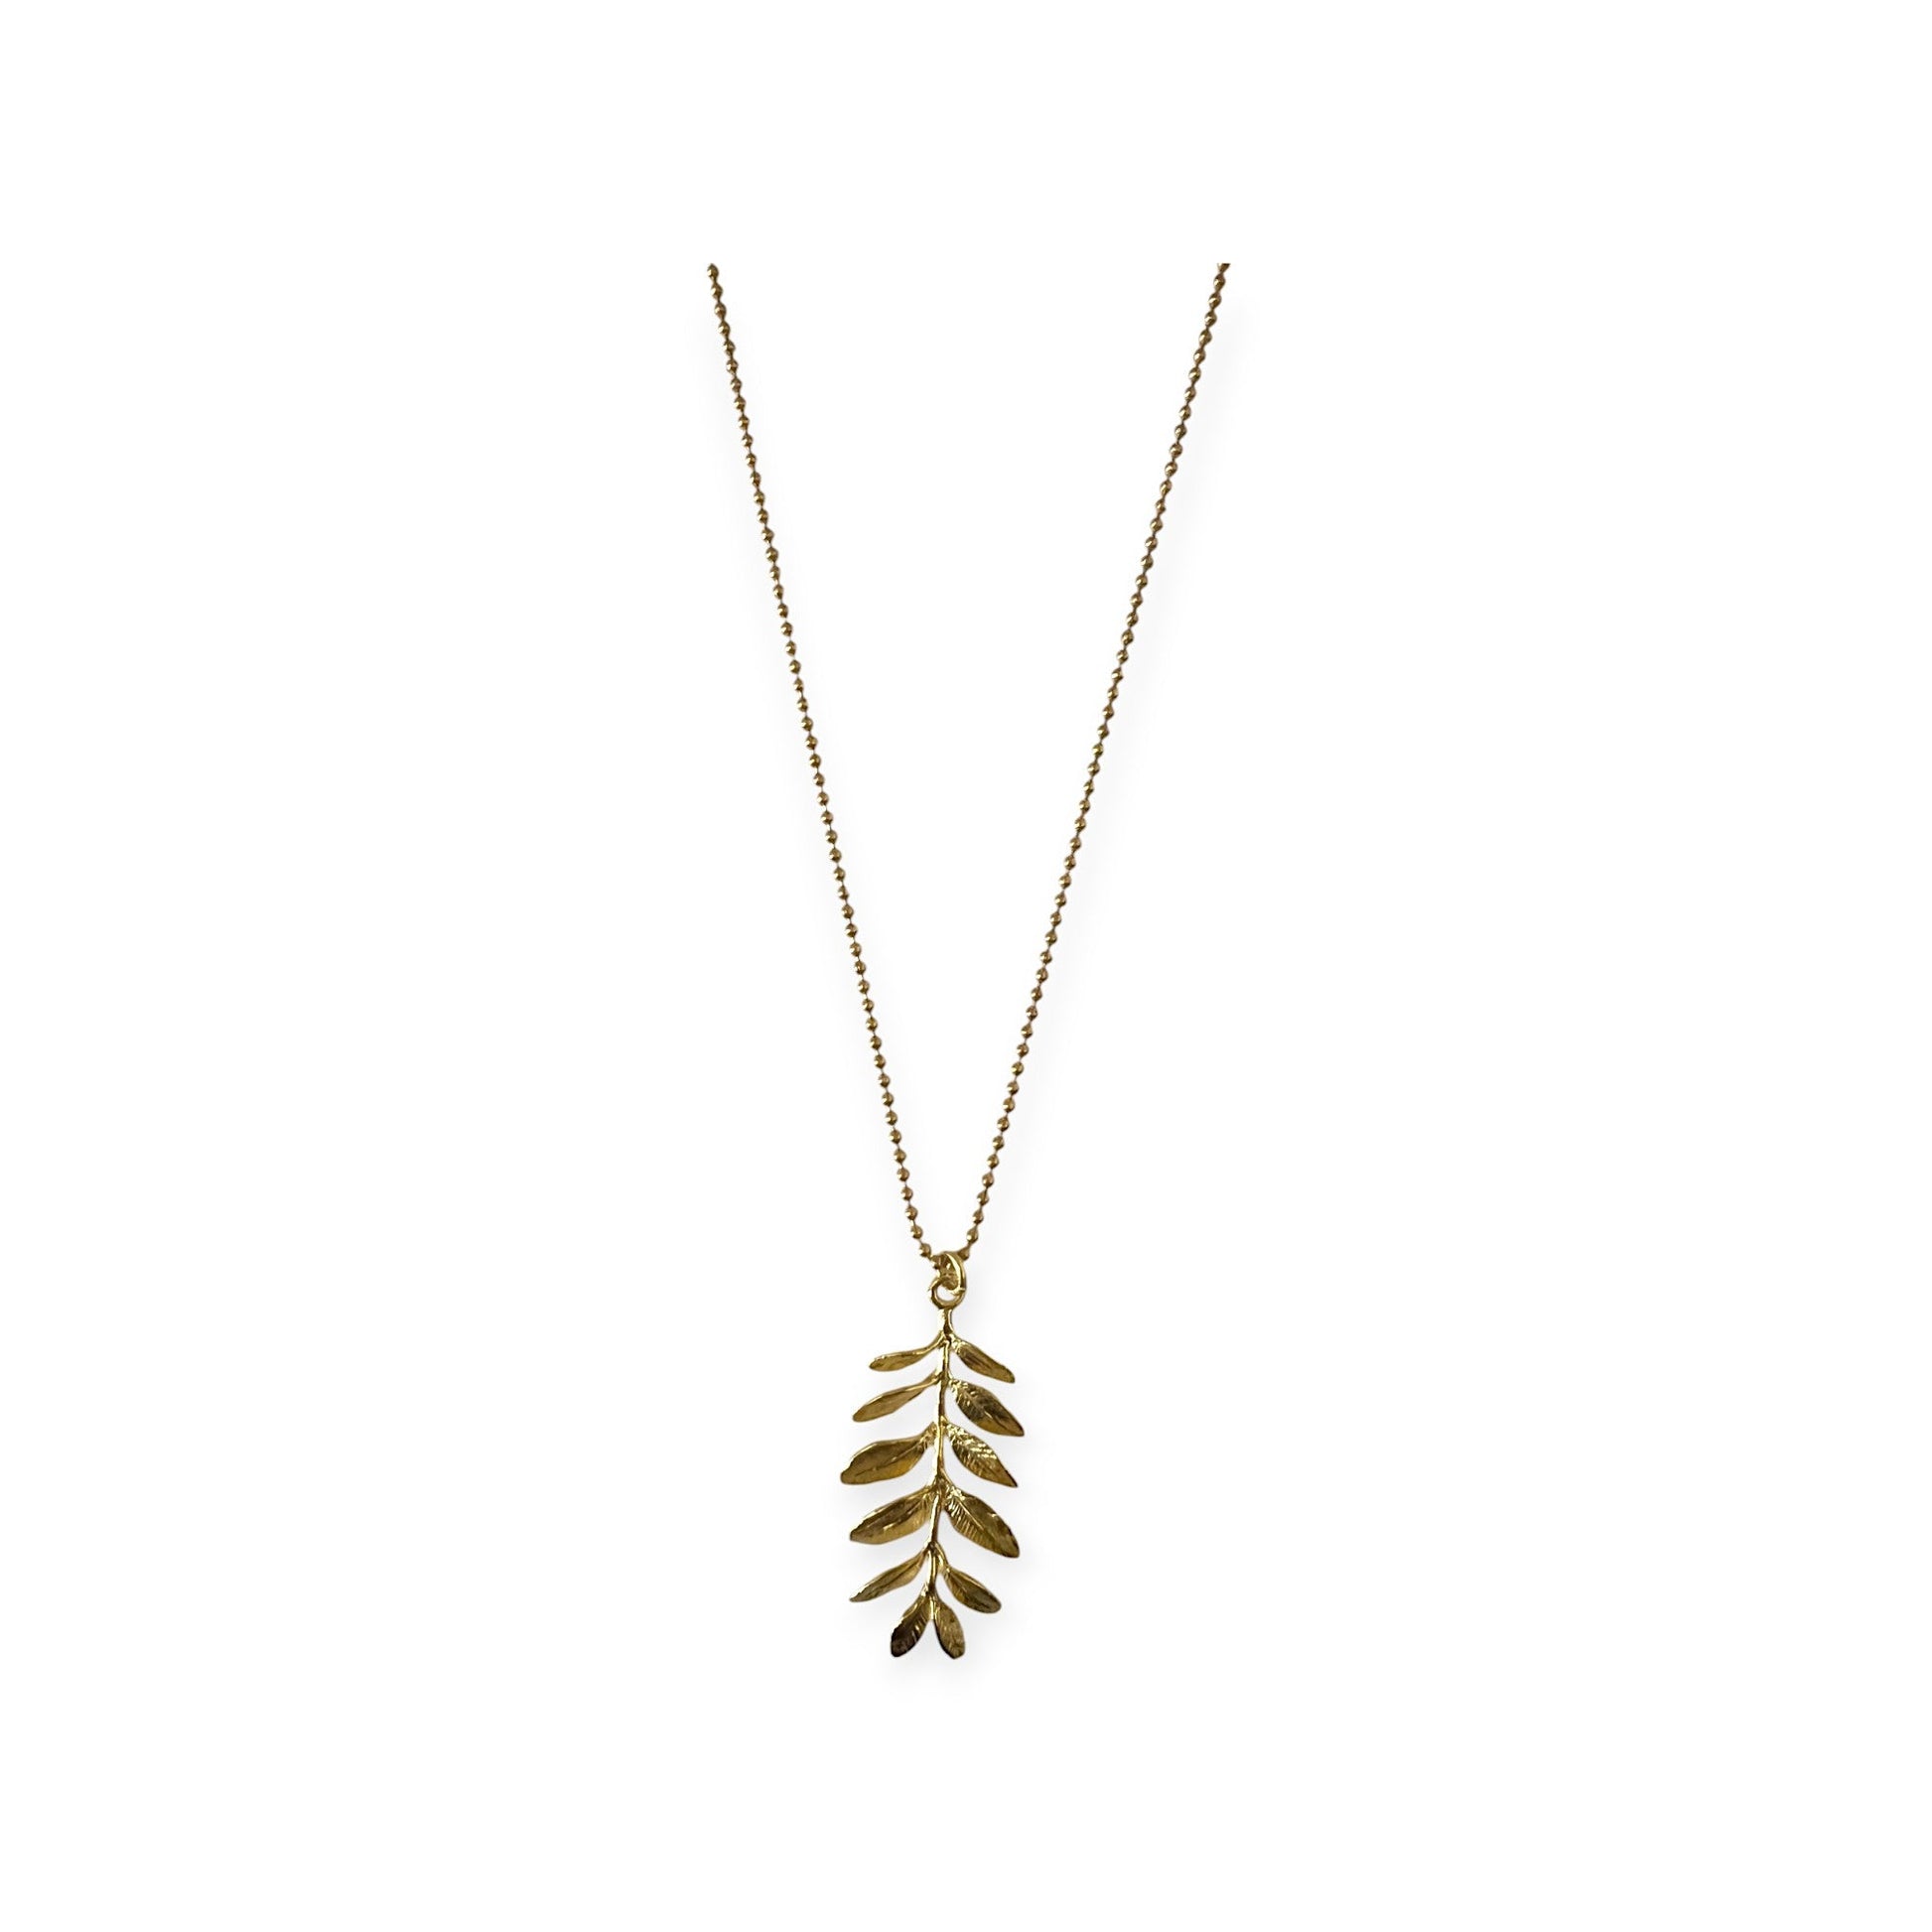 Delicate branch pendant necklace - Sundara Joon